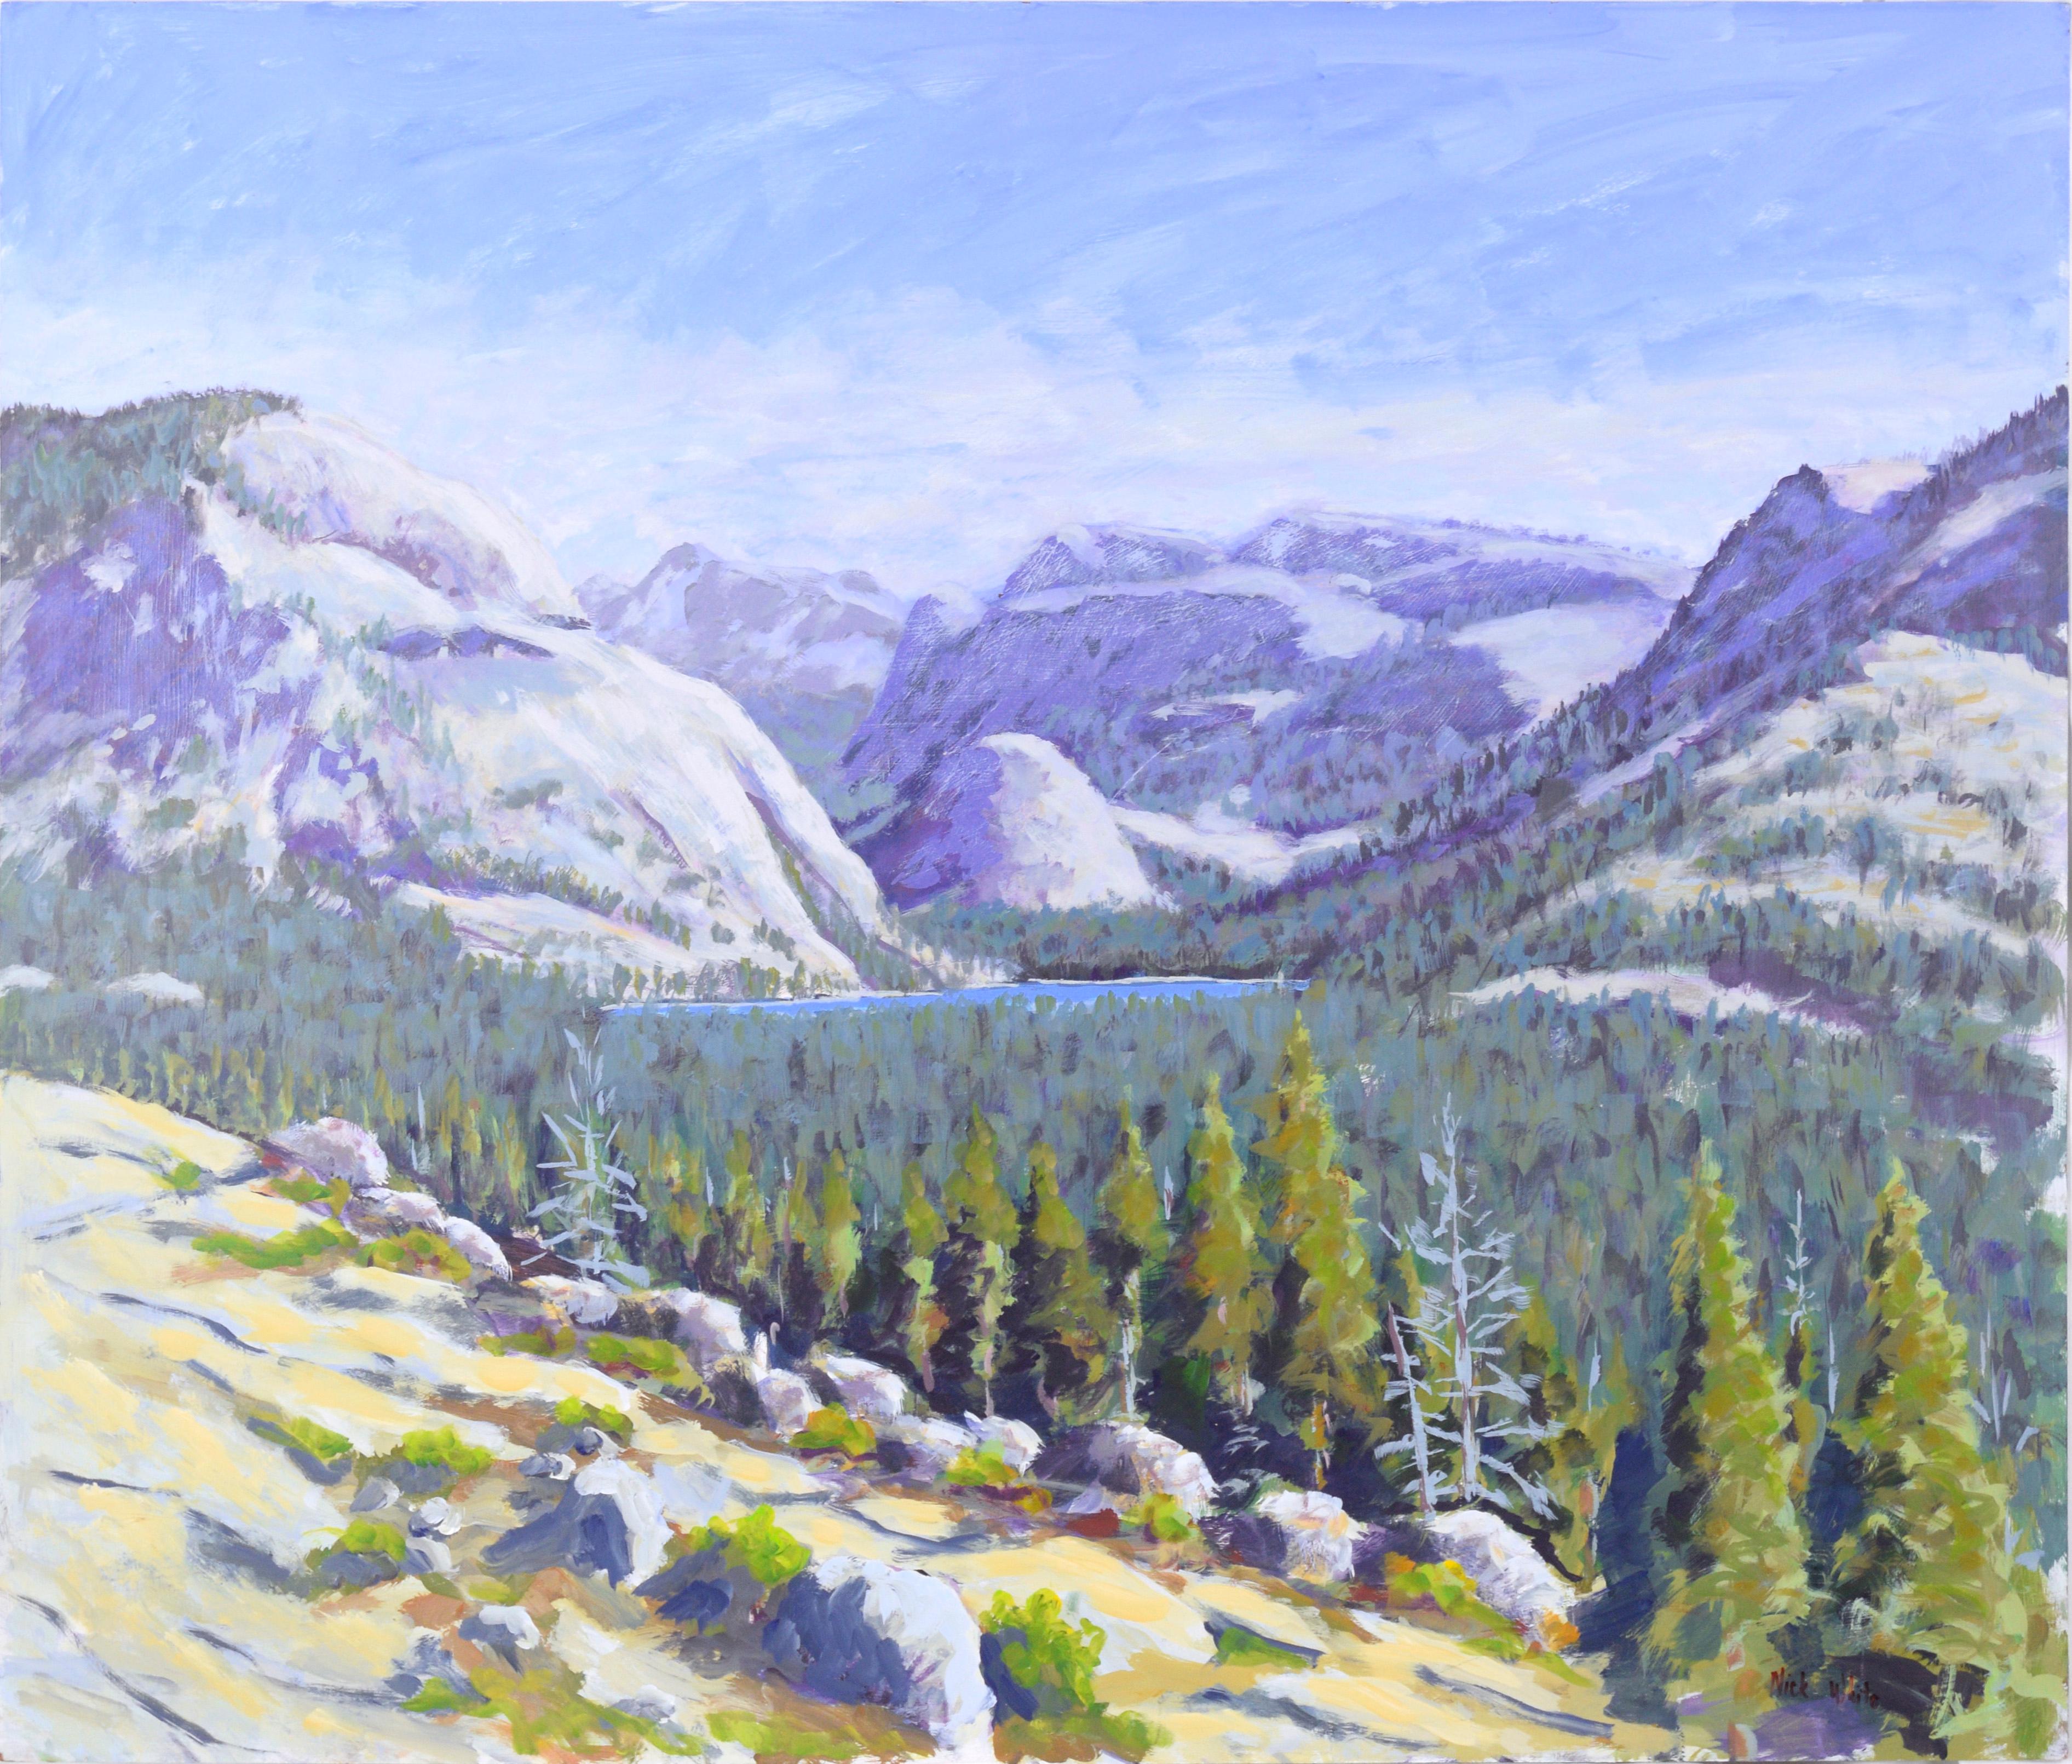 Landscape Painting Nick White - Lac de montagne - paysage en plein air acrylique sur panneau